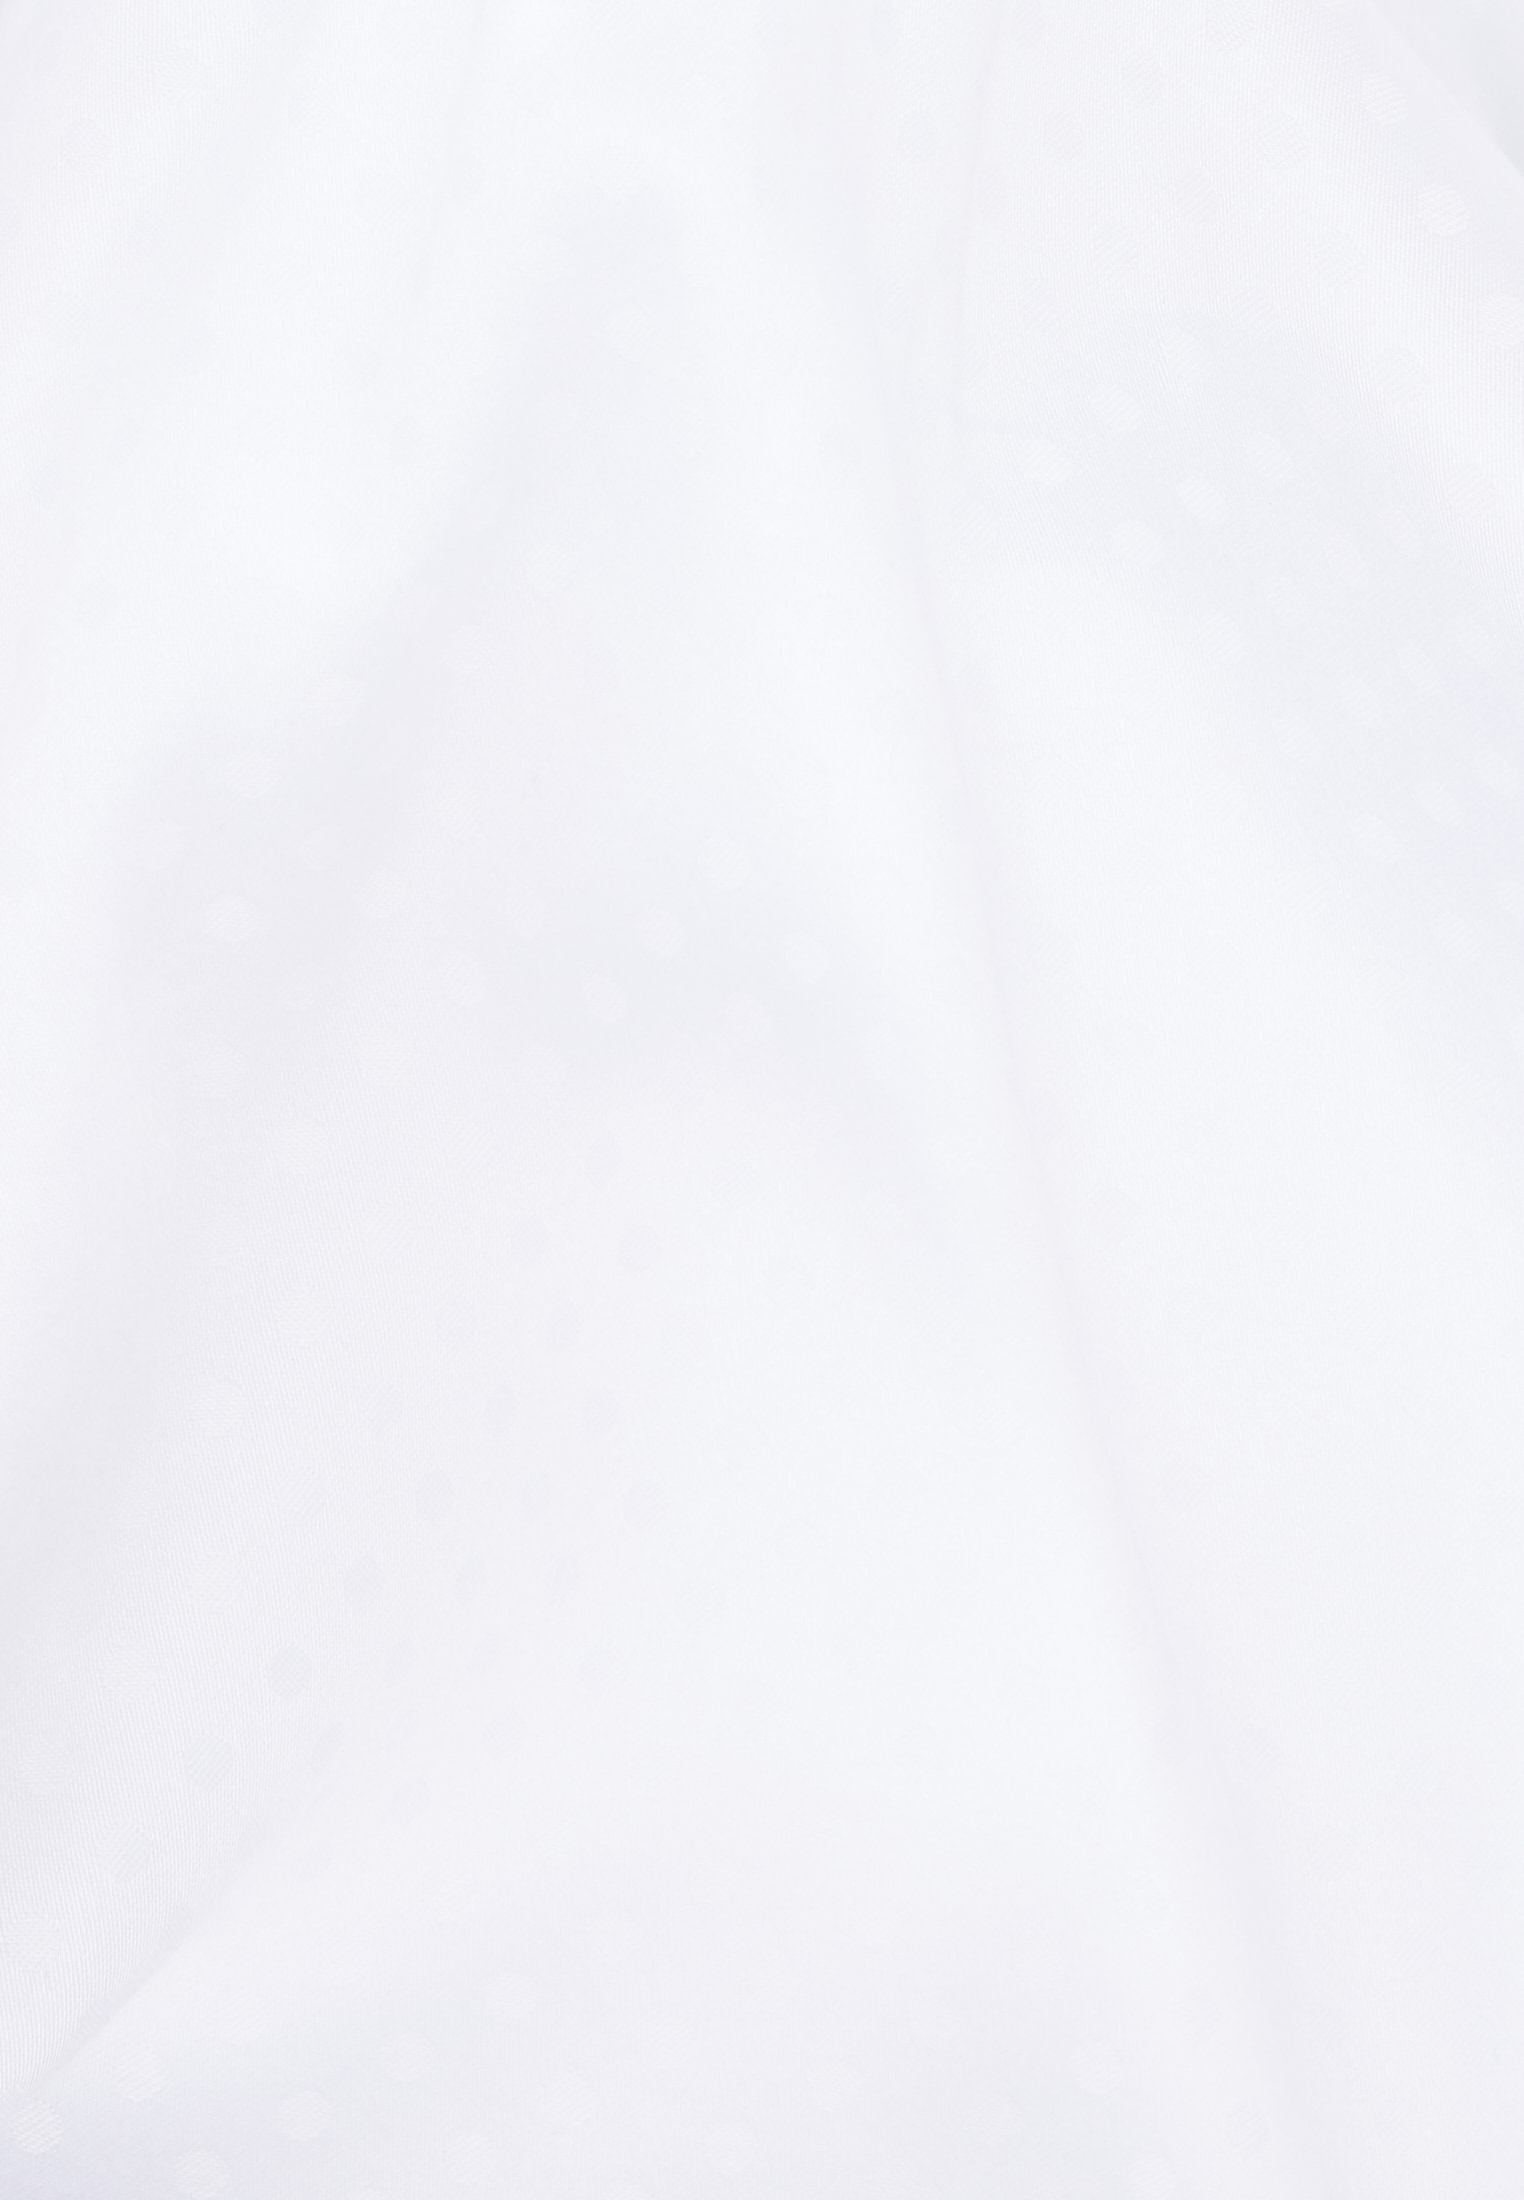 Hemdbluse in weiß strukturiert